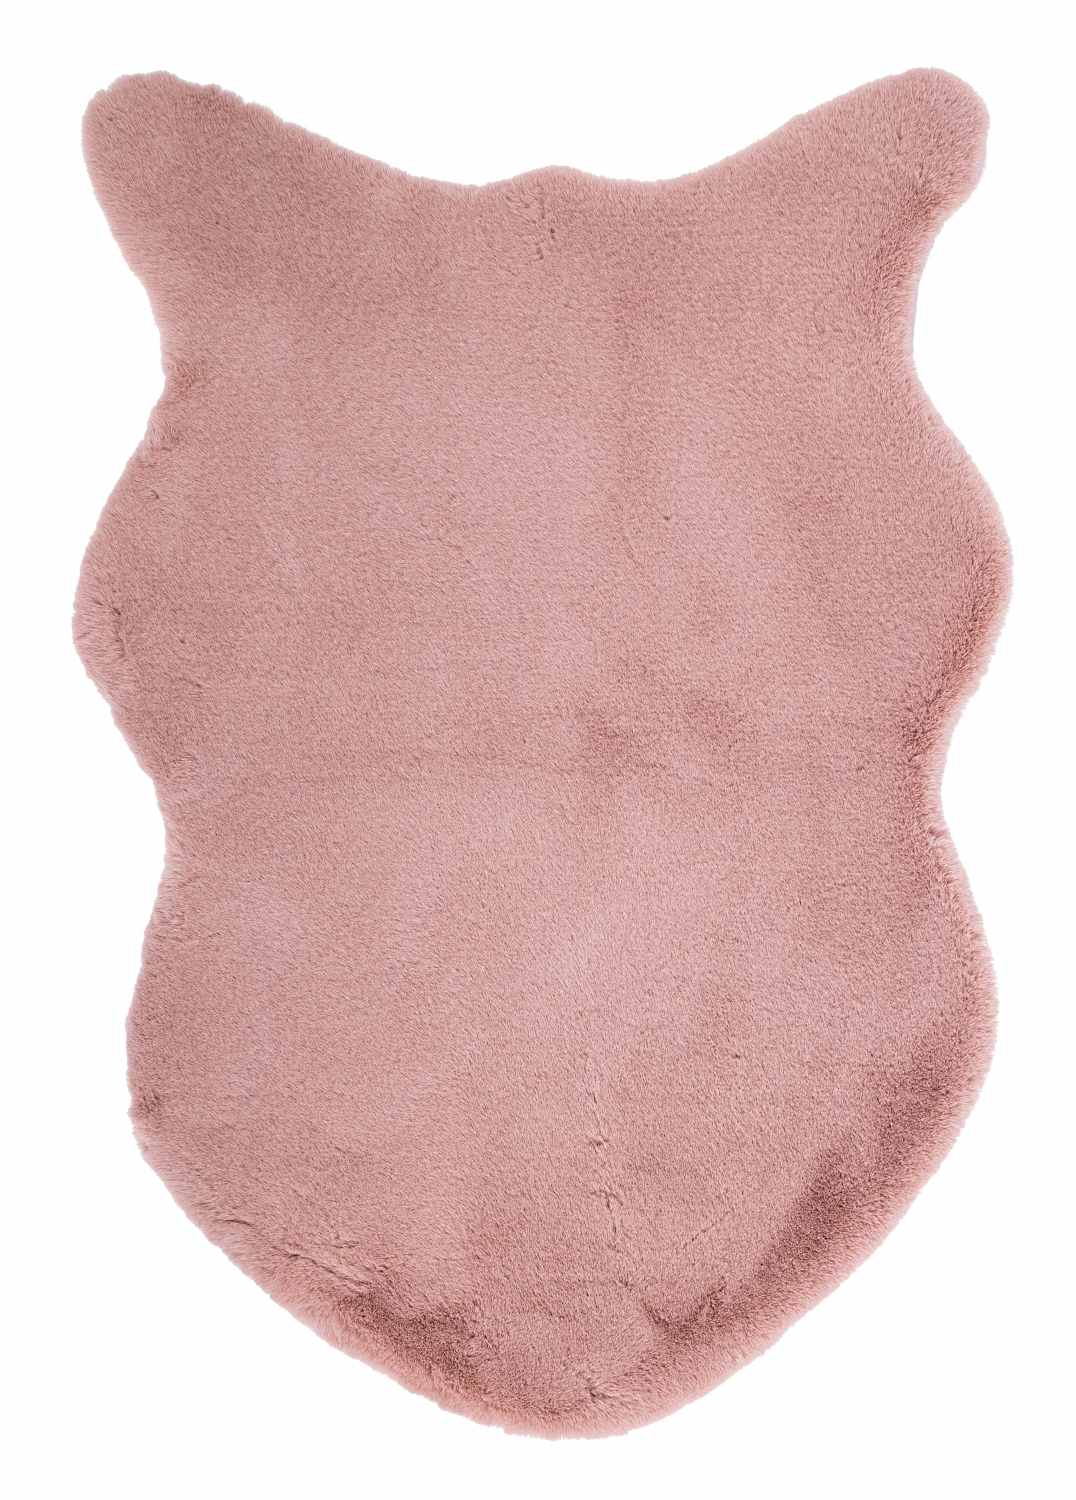 Der Teppich Kathlyn überzeugt mit seinem klassischen Design. Gefertigt wurde er aus 100% Polyester. Der Teppich besitzt einen rosa Farbton und die Maße von 60x90 cm.